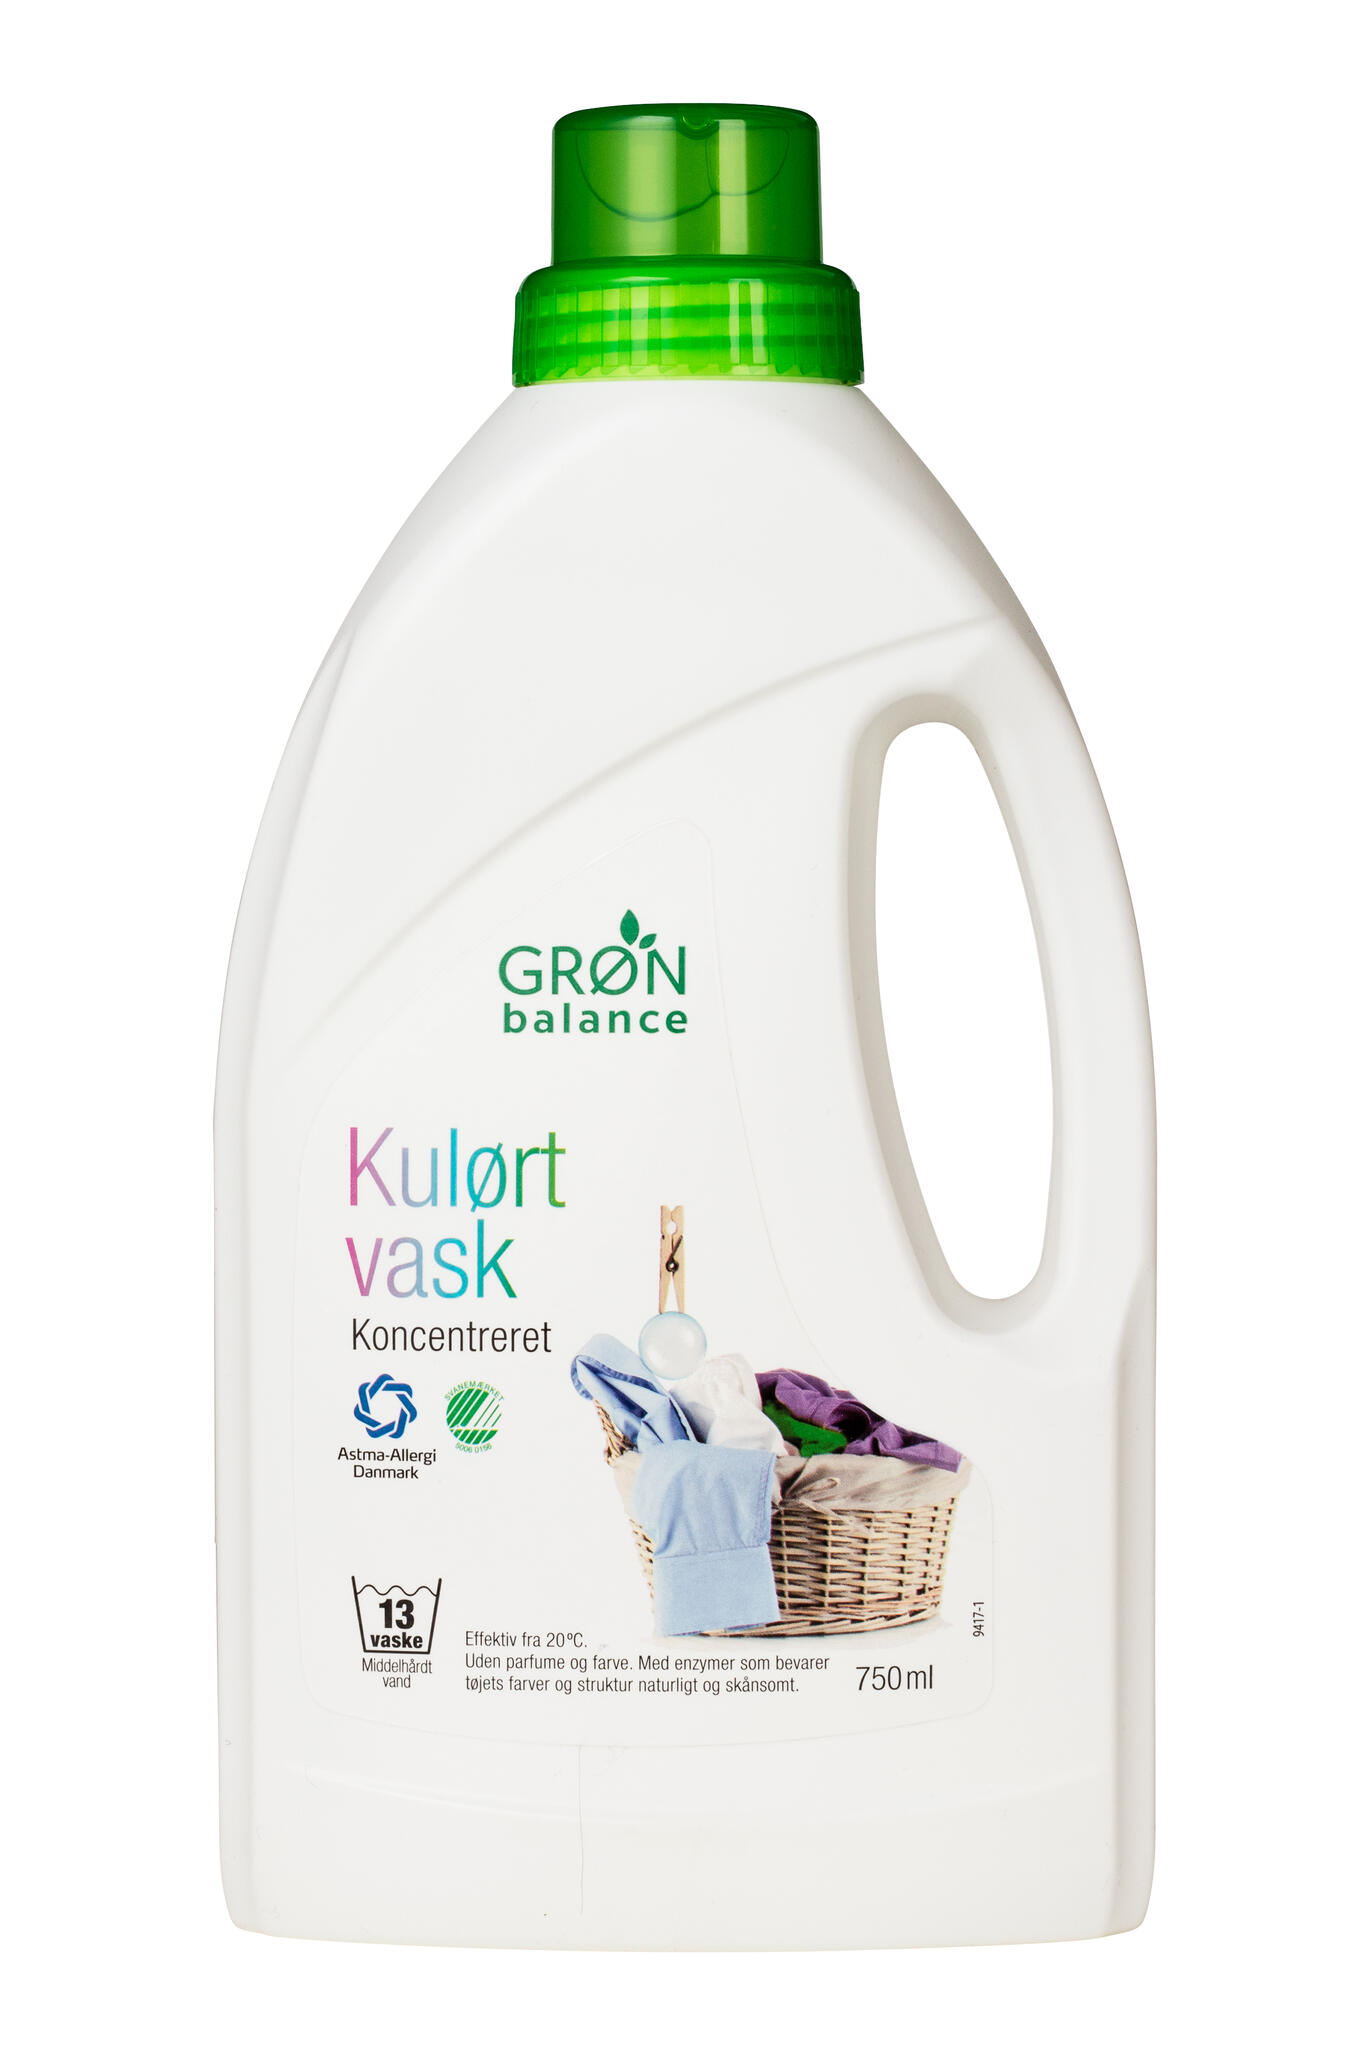 Grøn Balance Kulørt vask | Forbrugerrådet